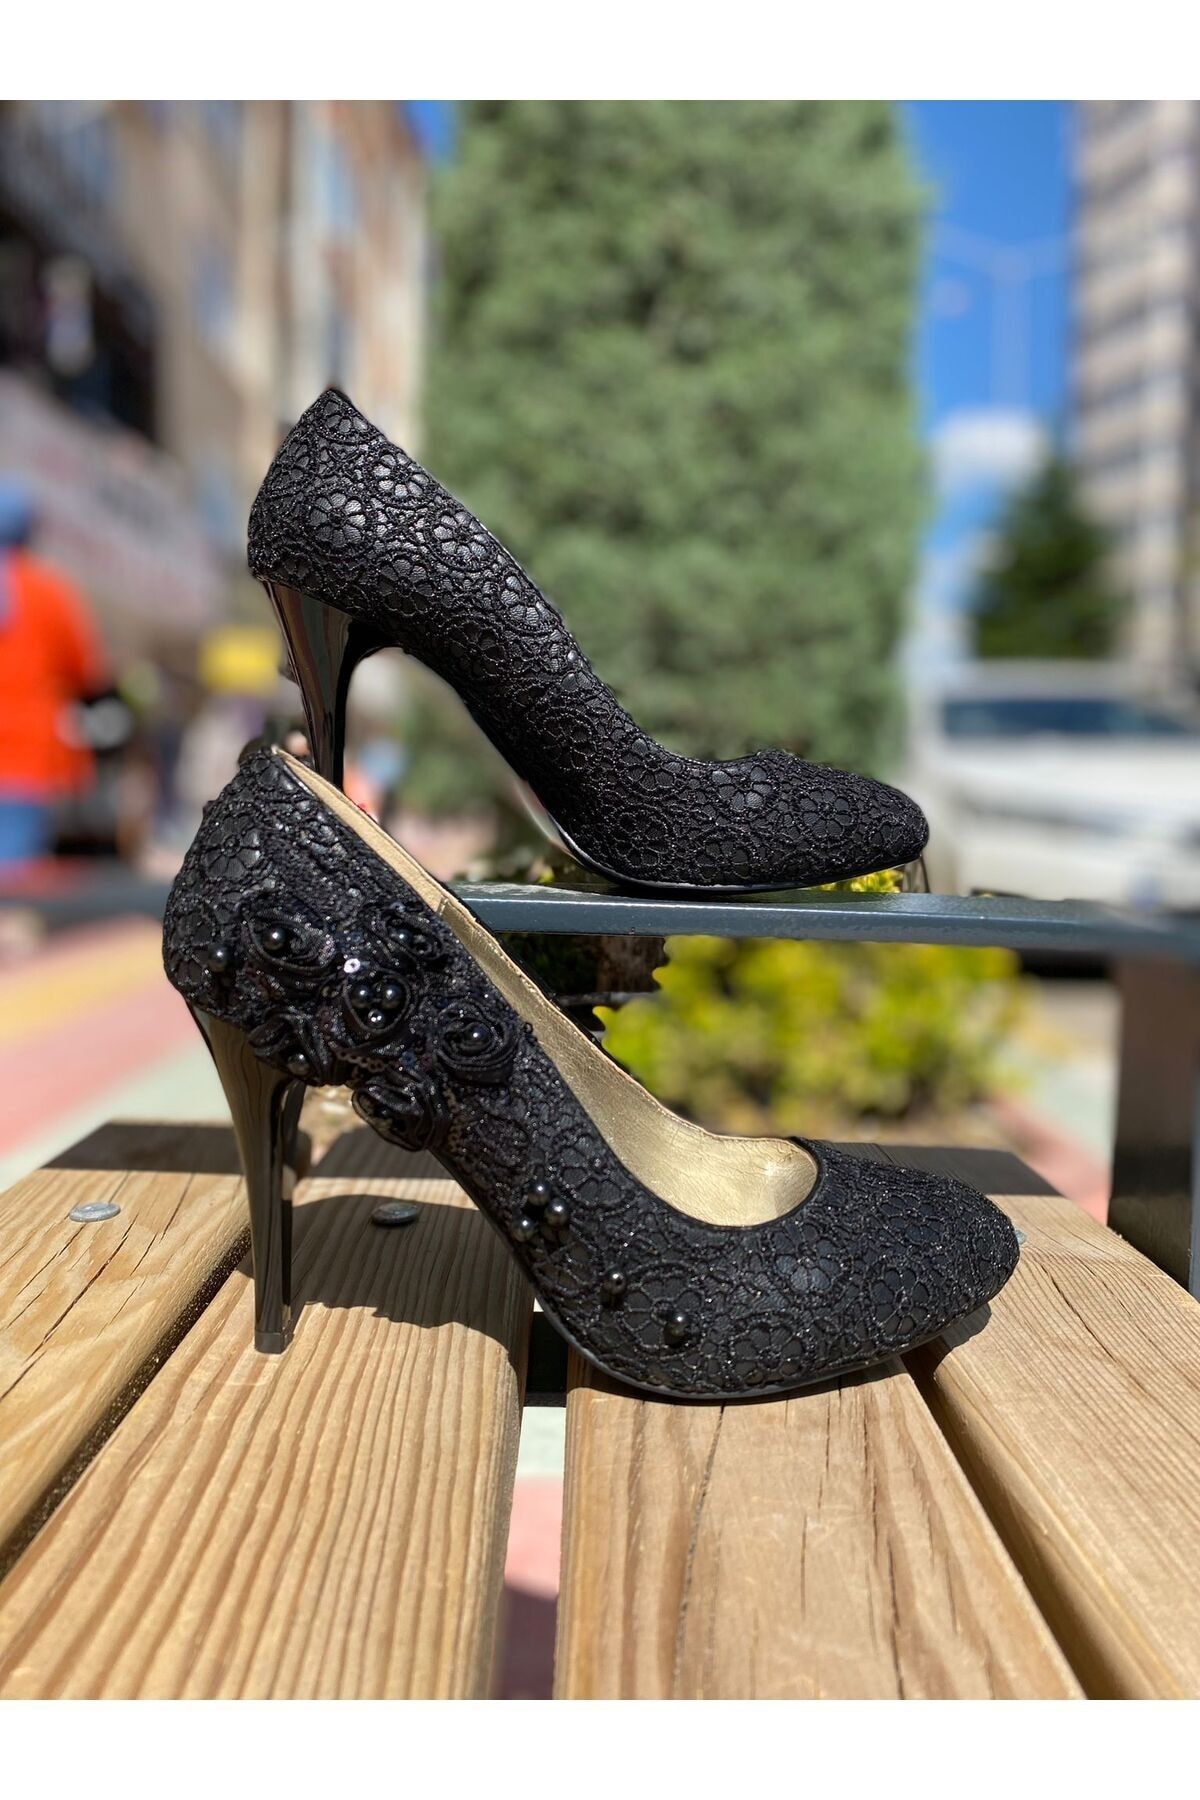 Desire Bej Style Siyah Dantel İşlemeli 8cm Topuklu Klasik Kadın Ayakkabı